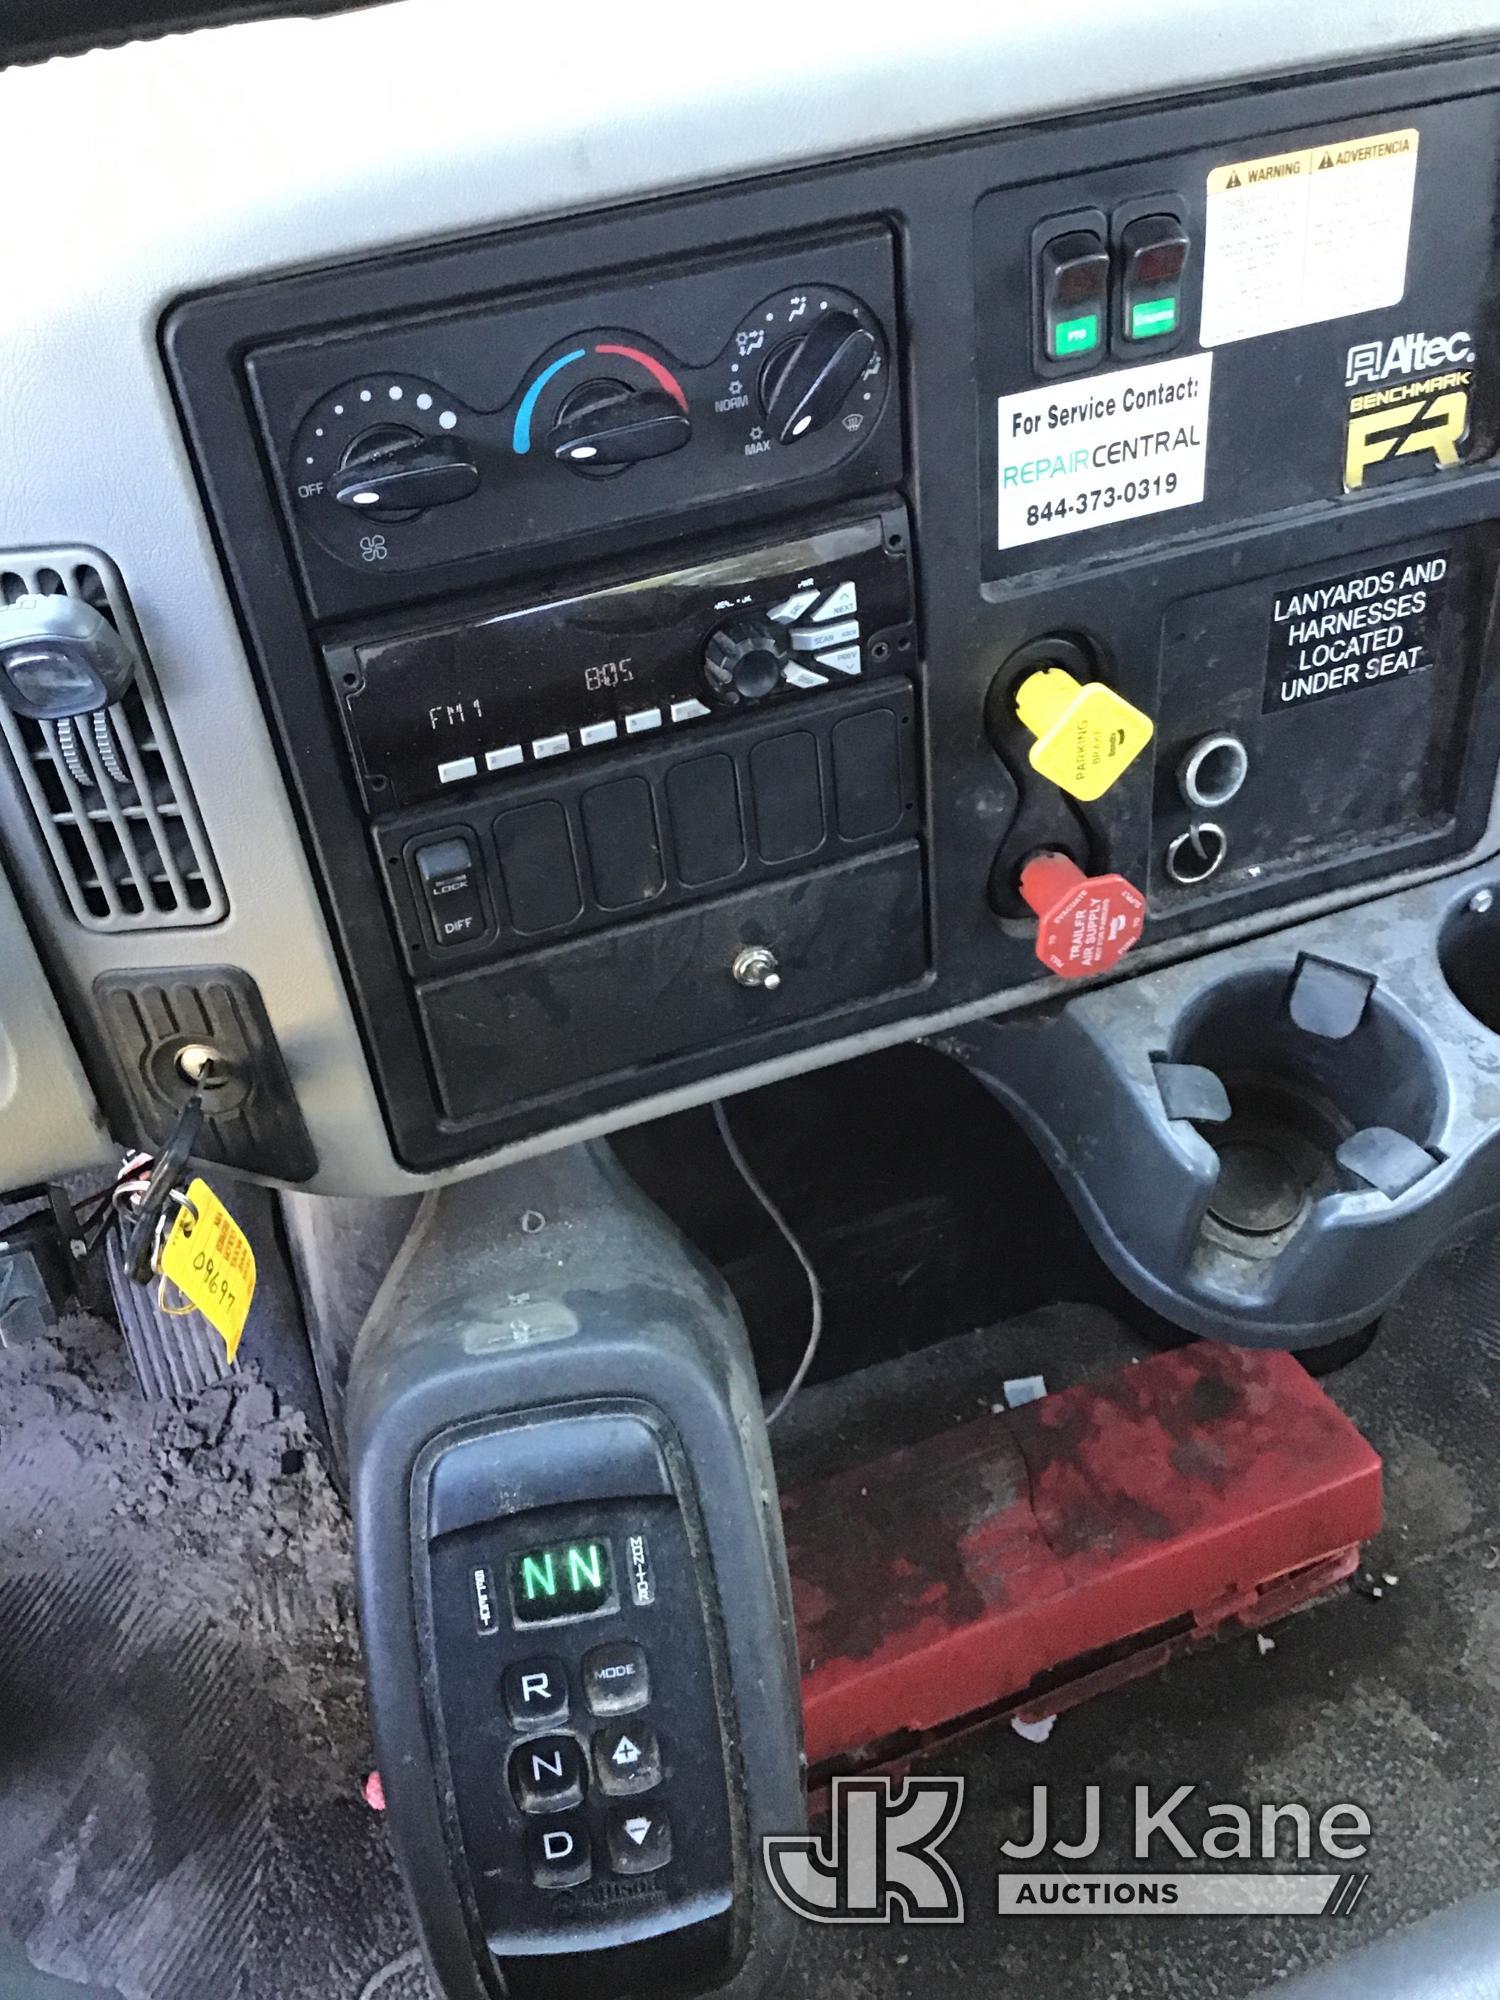 (Ocala, FL) Altec AA55-MH, Material Handling Bucket Truck rear mounted on 2019 International Durasta